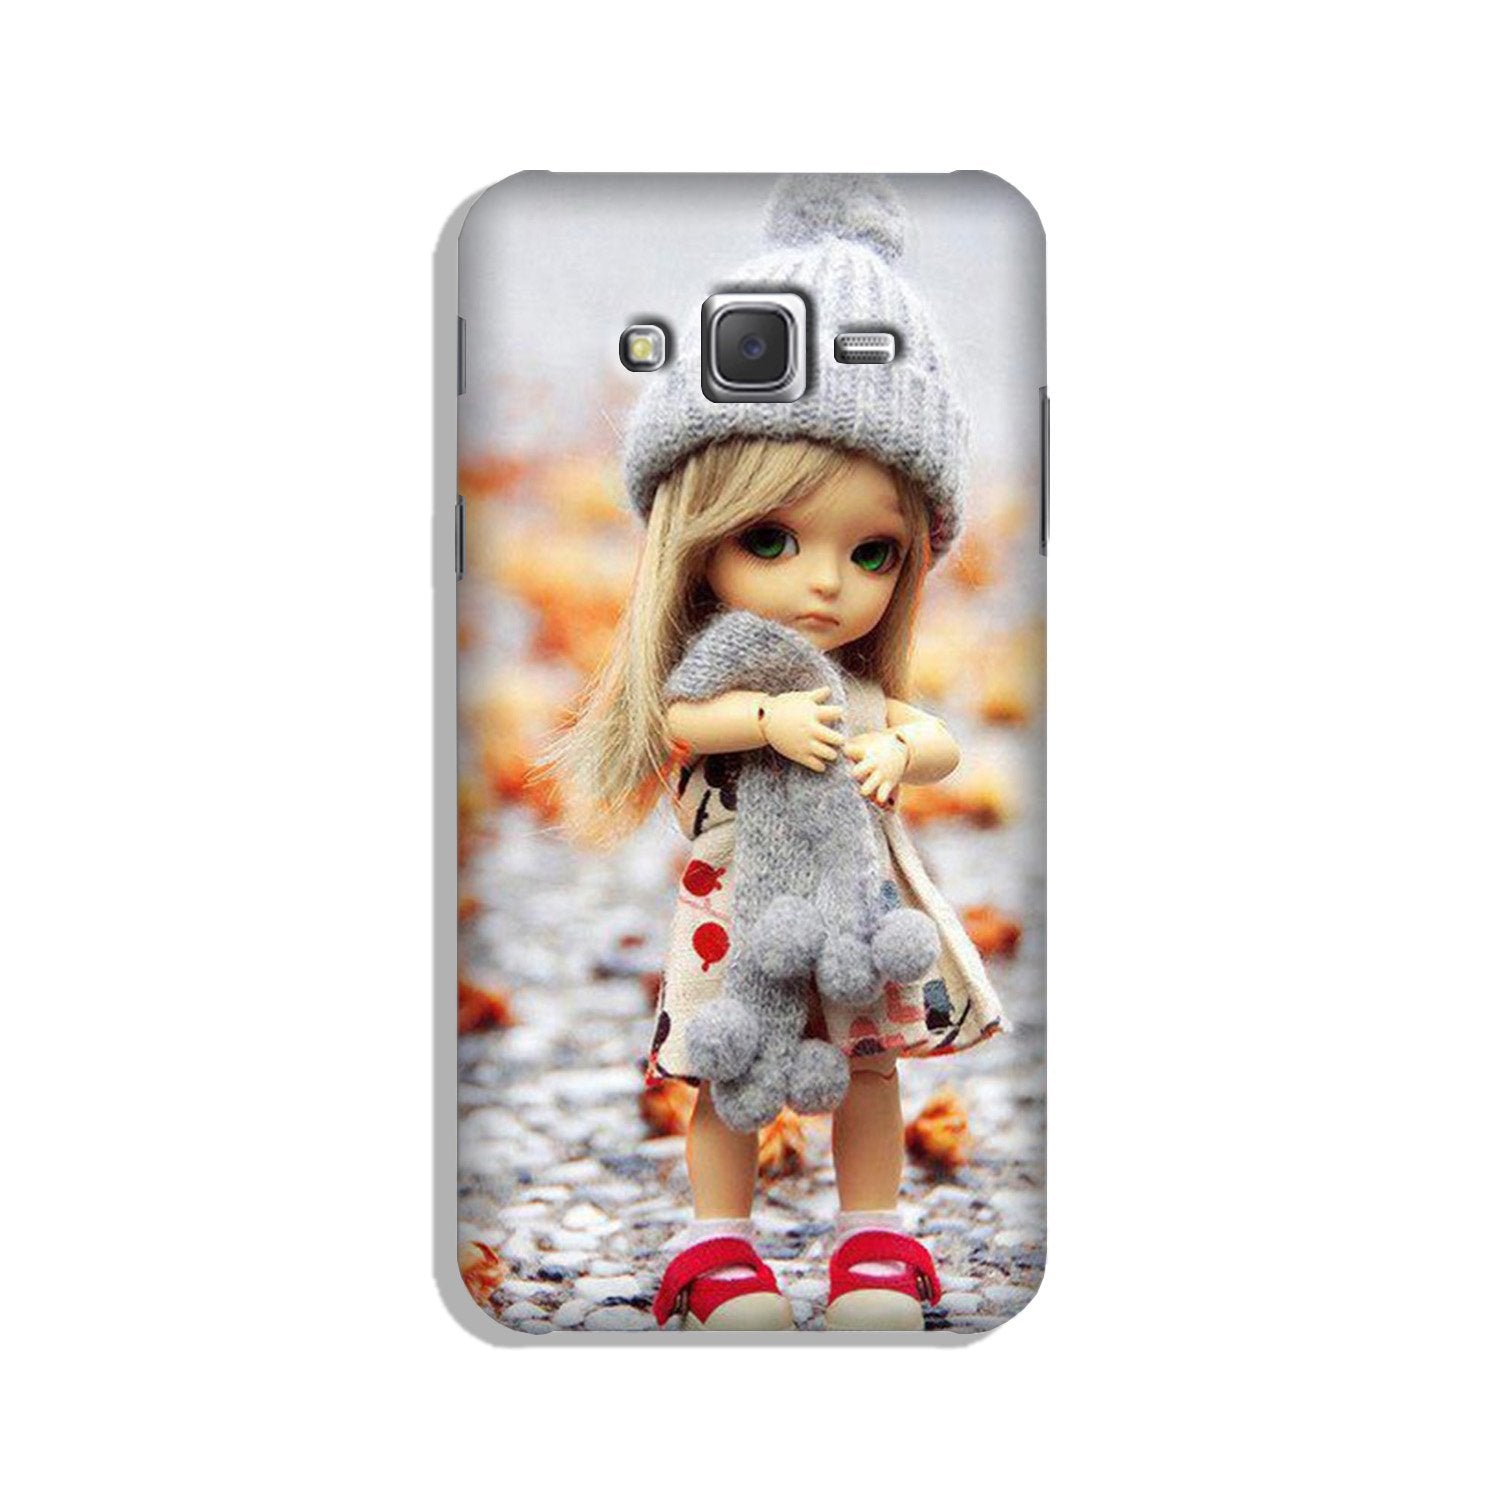 Cute Doll Case for Galaxy J5 (2015)